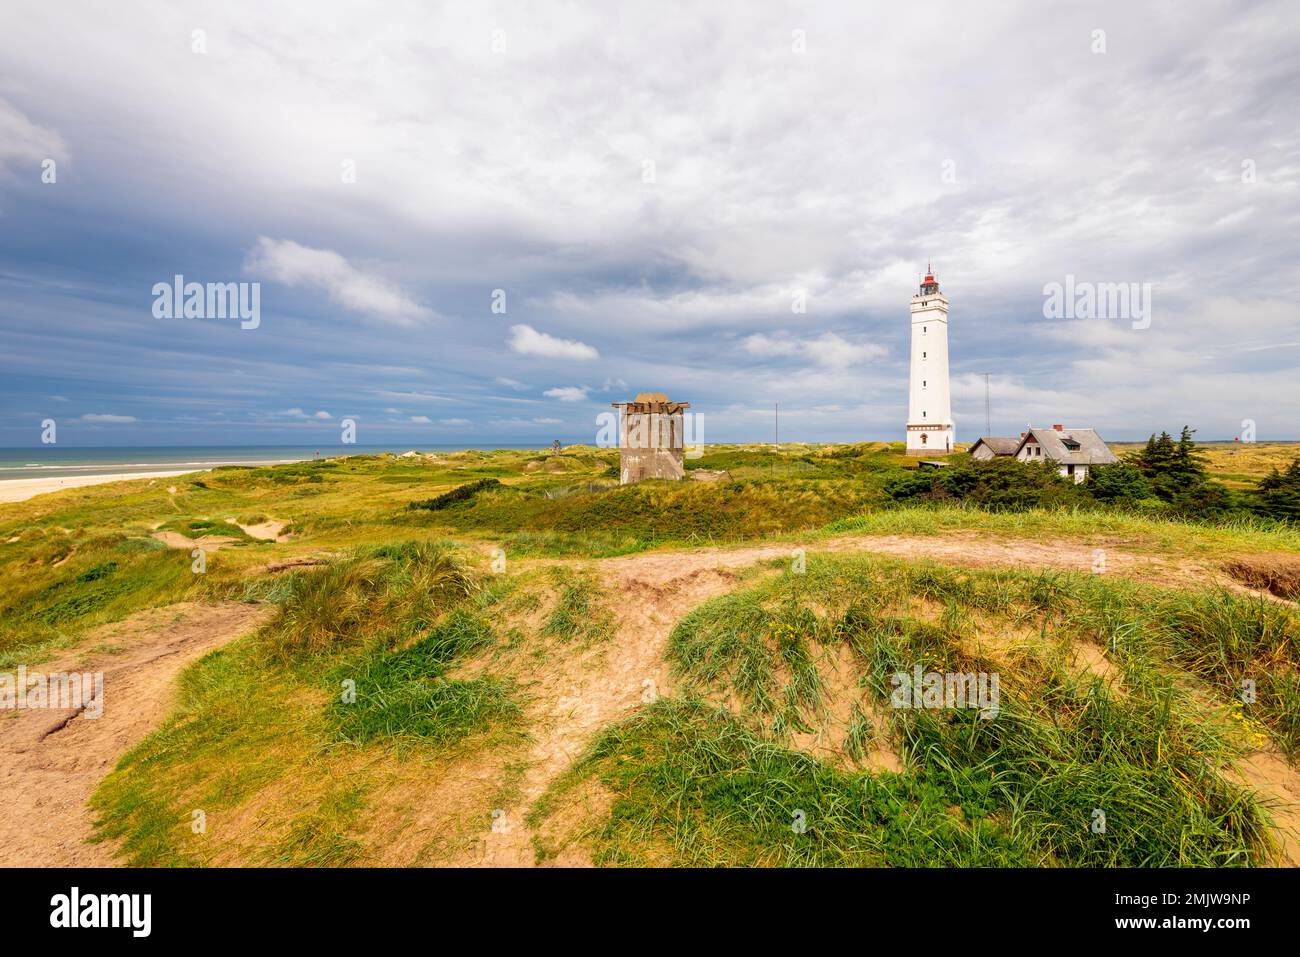 Der Blavand Lighthouse befindet sich in Blavandshuk, in der Nähe von Esbjerg, Dänemark, und wurde 1900 erbaut. Blavandshuk ist der westlichste Punkt Dänemarks. Stockfoto